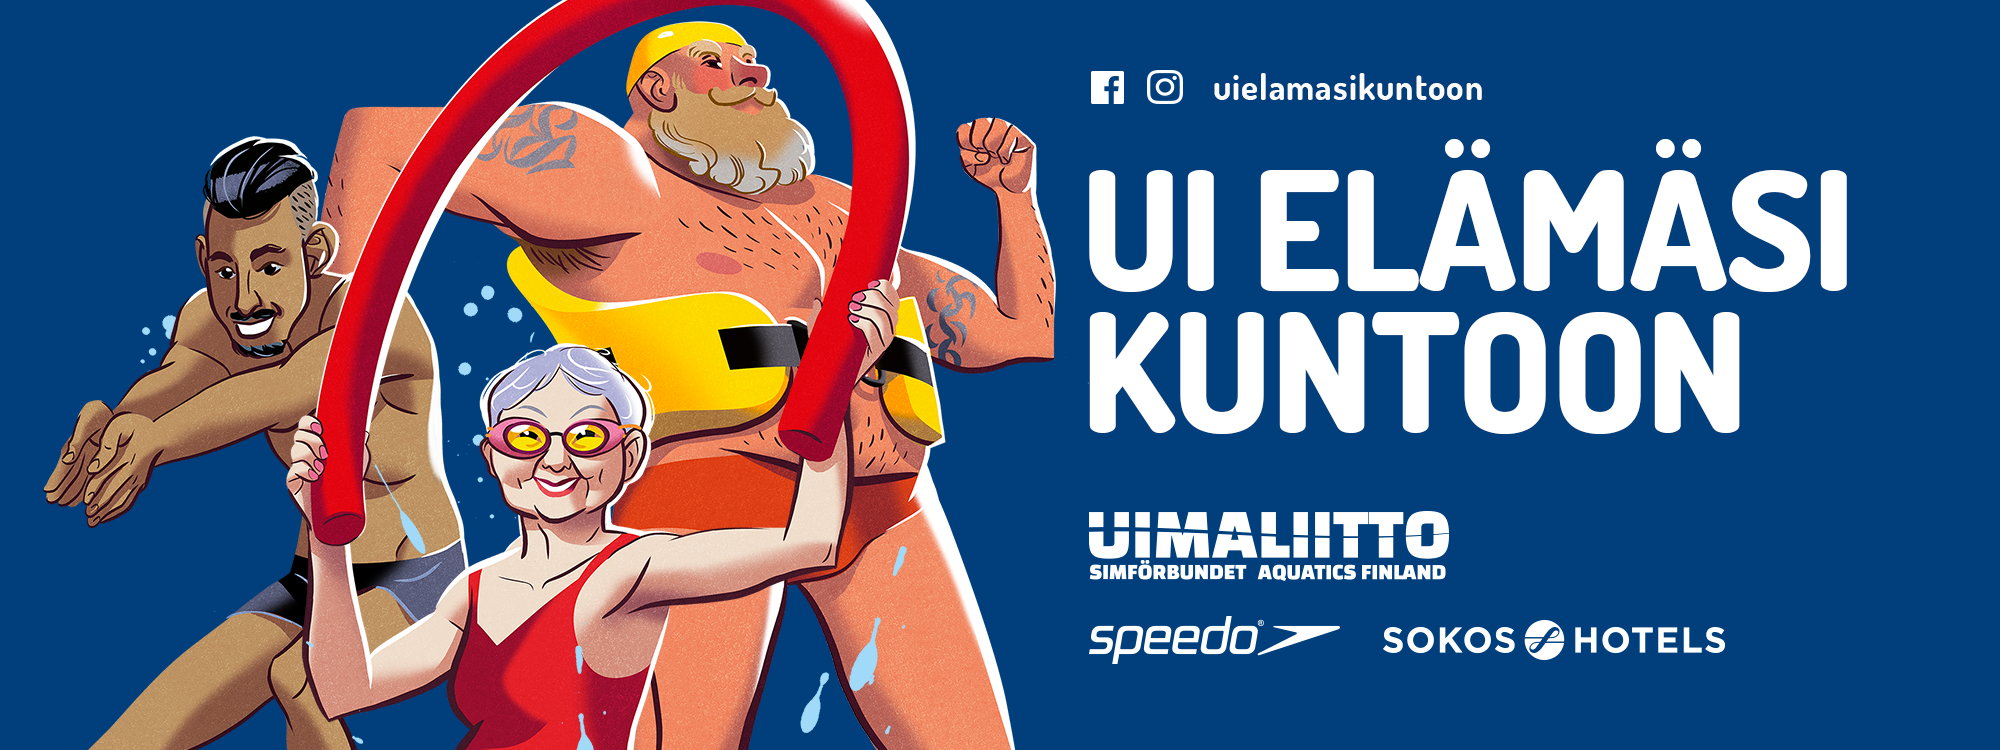 Ui elämäsi kuntoon -kampanjan mainoskuva. Kolme piirrettyä uimaria. Logot: Uimaliitto, Speedo ja Sokos Hotels